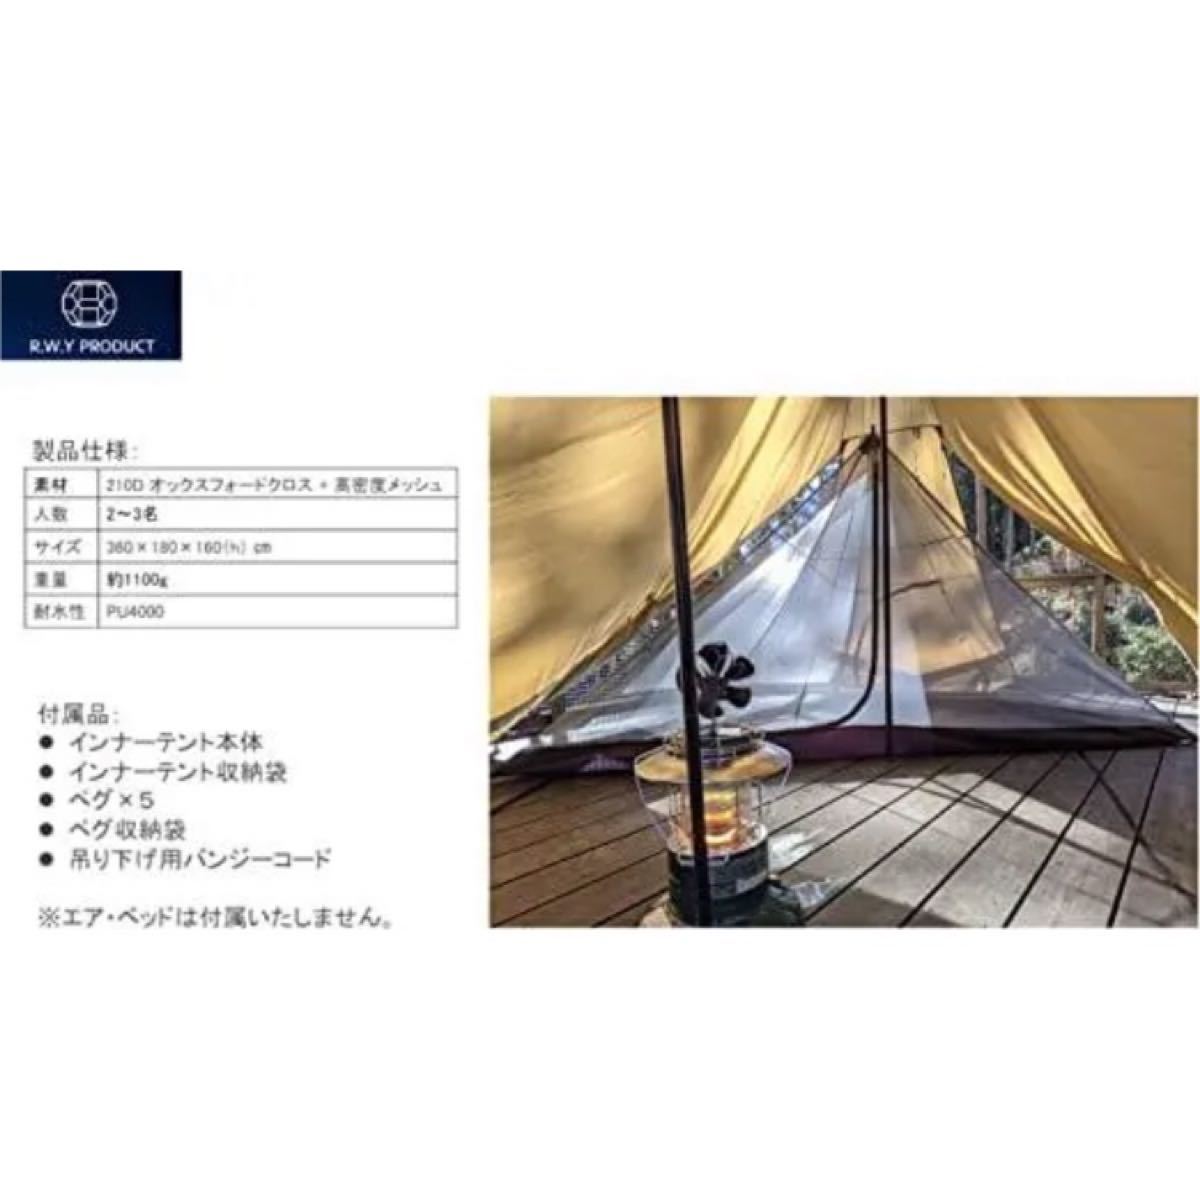 ★インナーテント★ ワンポールテント 蚊帳 キャンプ テント 2・3人用 メッシュテント モスキートネット アウトドア